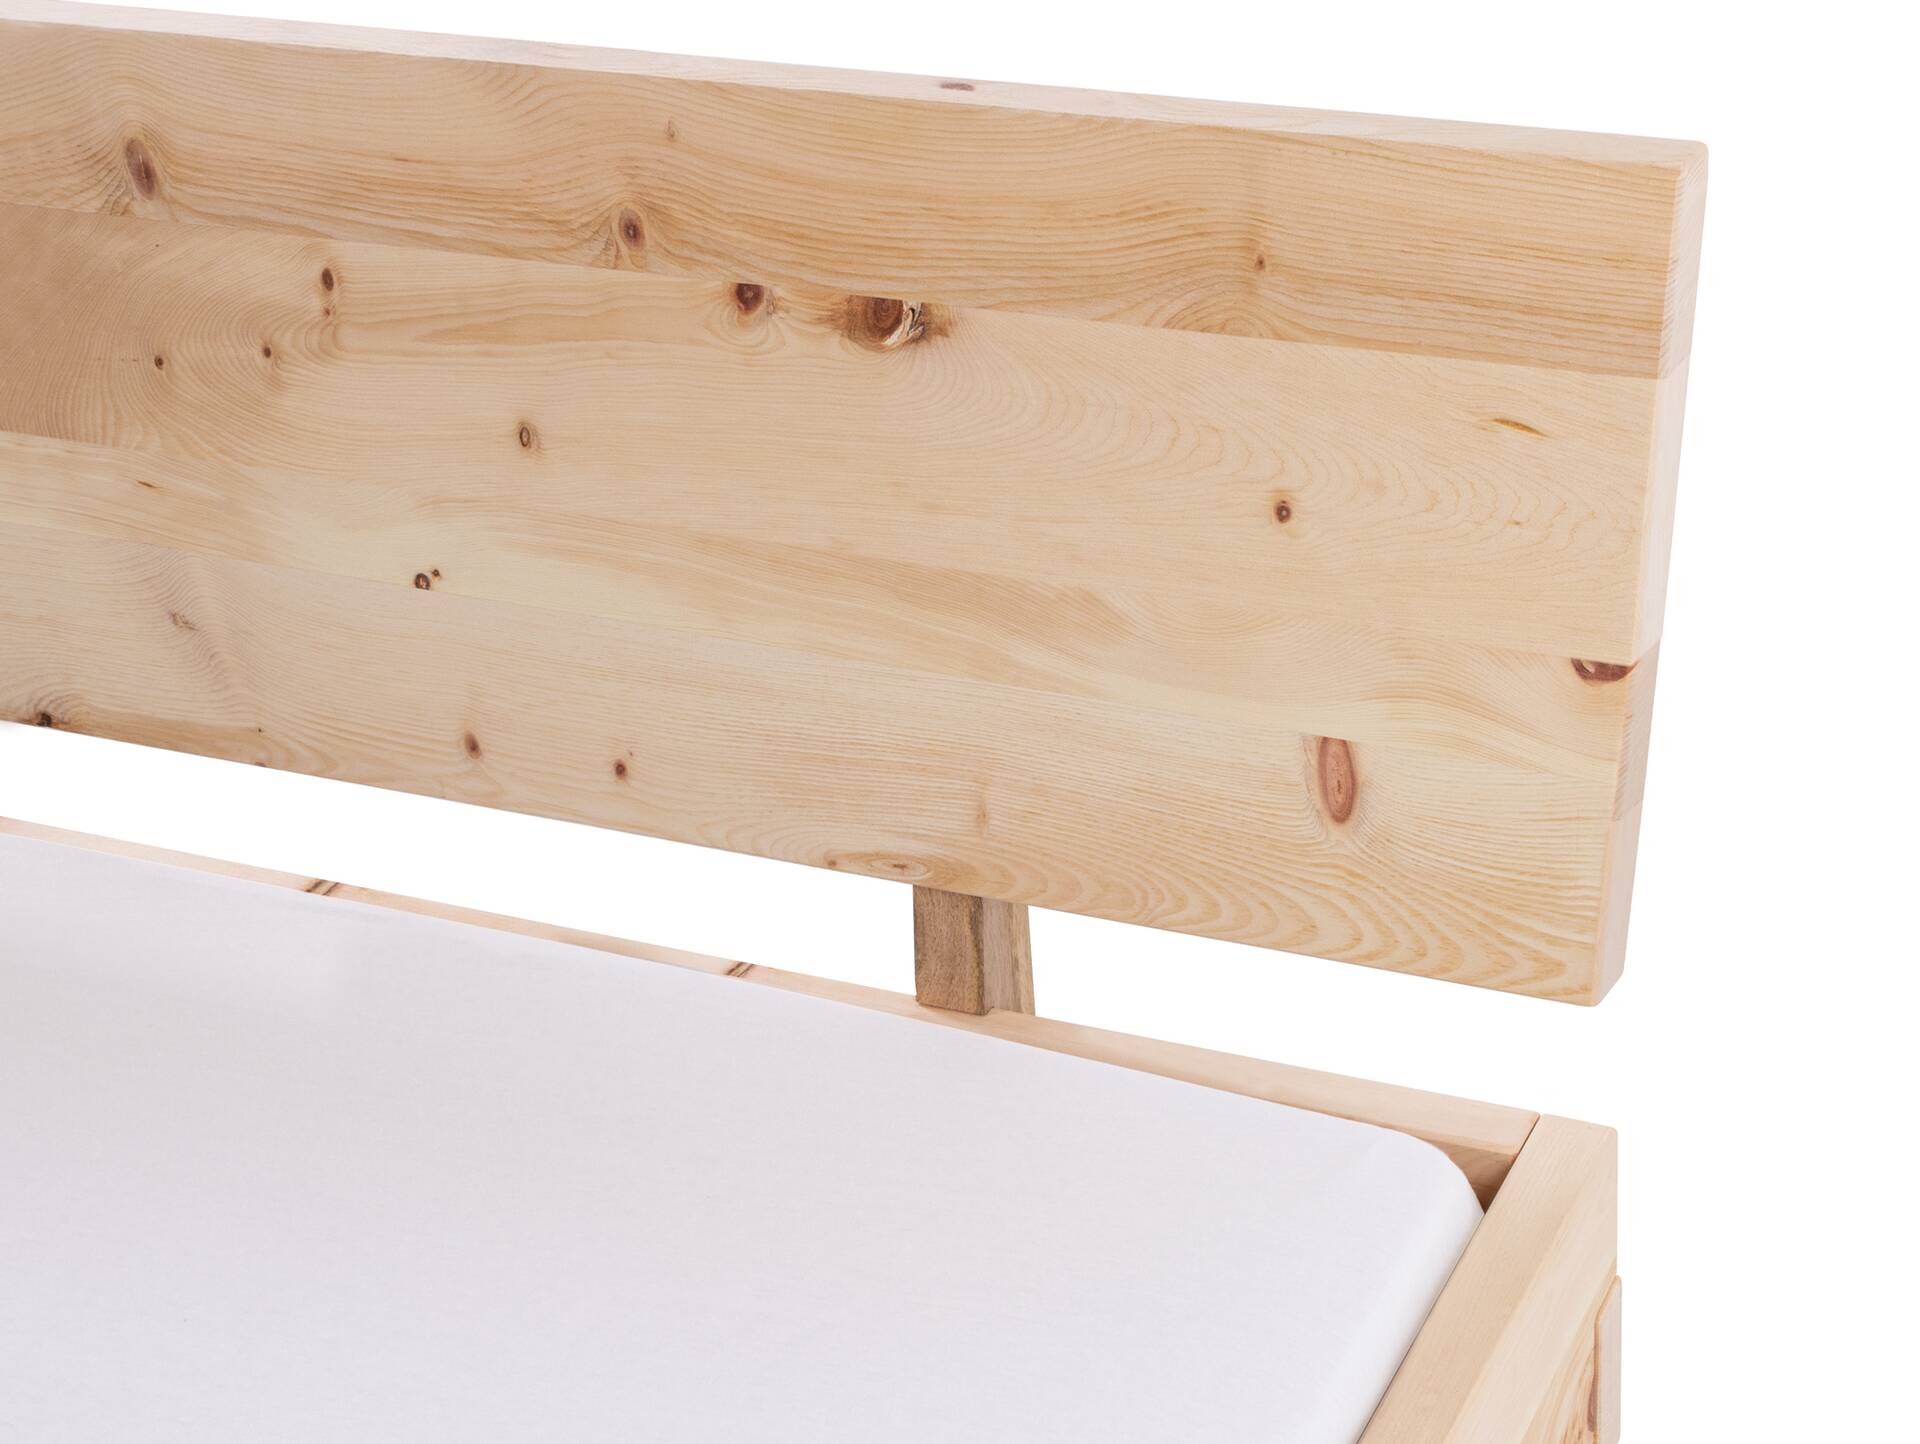 ZARUBA Zirbenbett mit Holz-Kufen/Holzkopfteil, Material Massivholz, Zirbe unbehandelt, mit/ohne Kopfteil 120 x 200 cm | mit Kopfteil